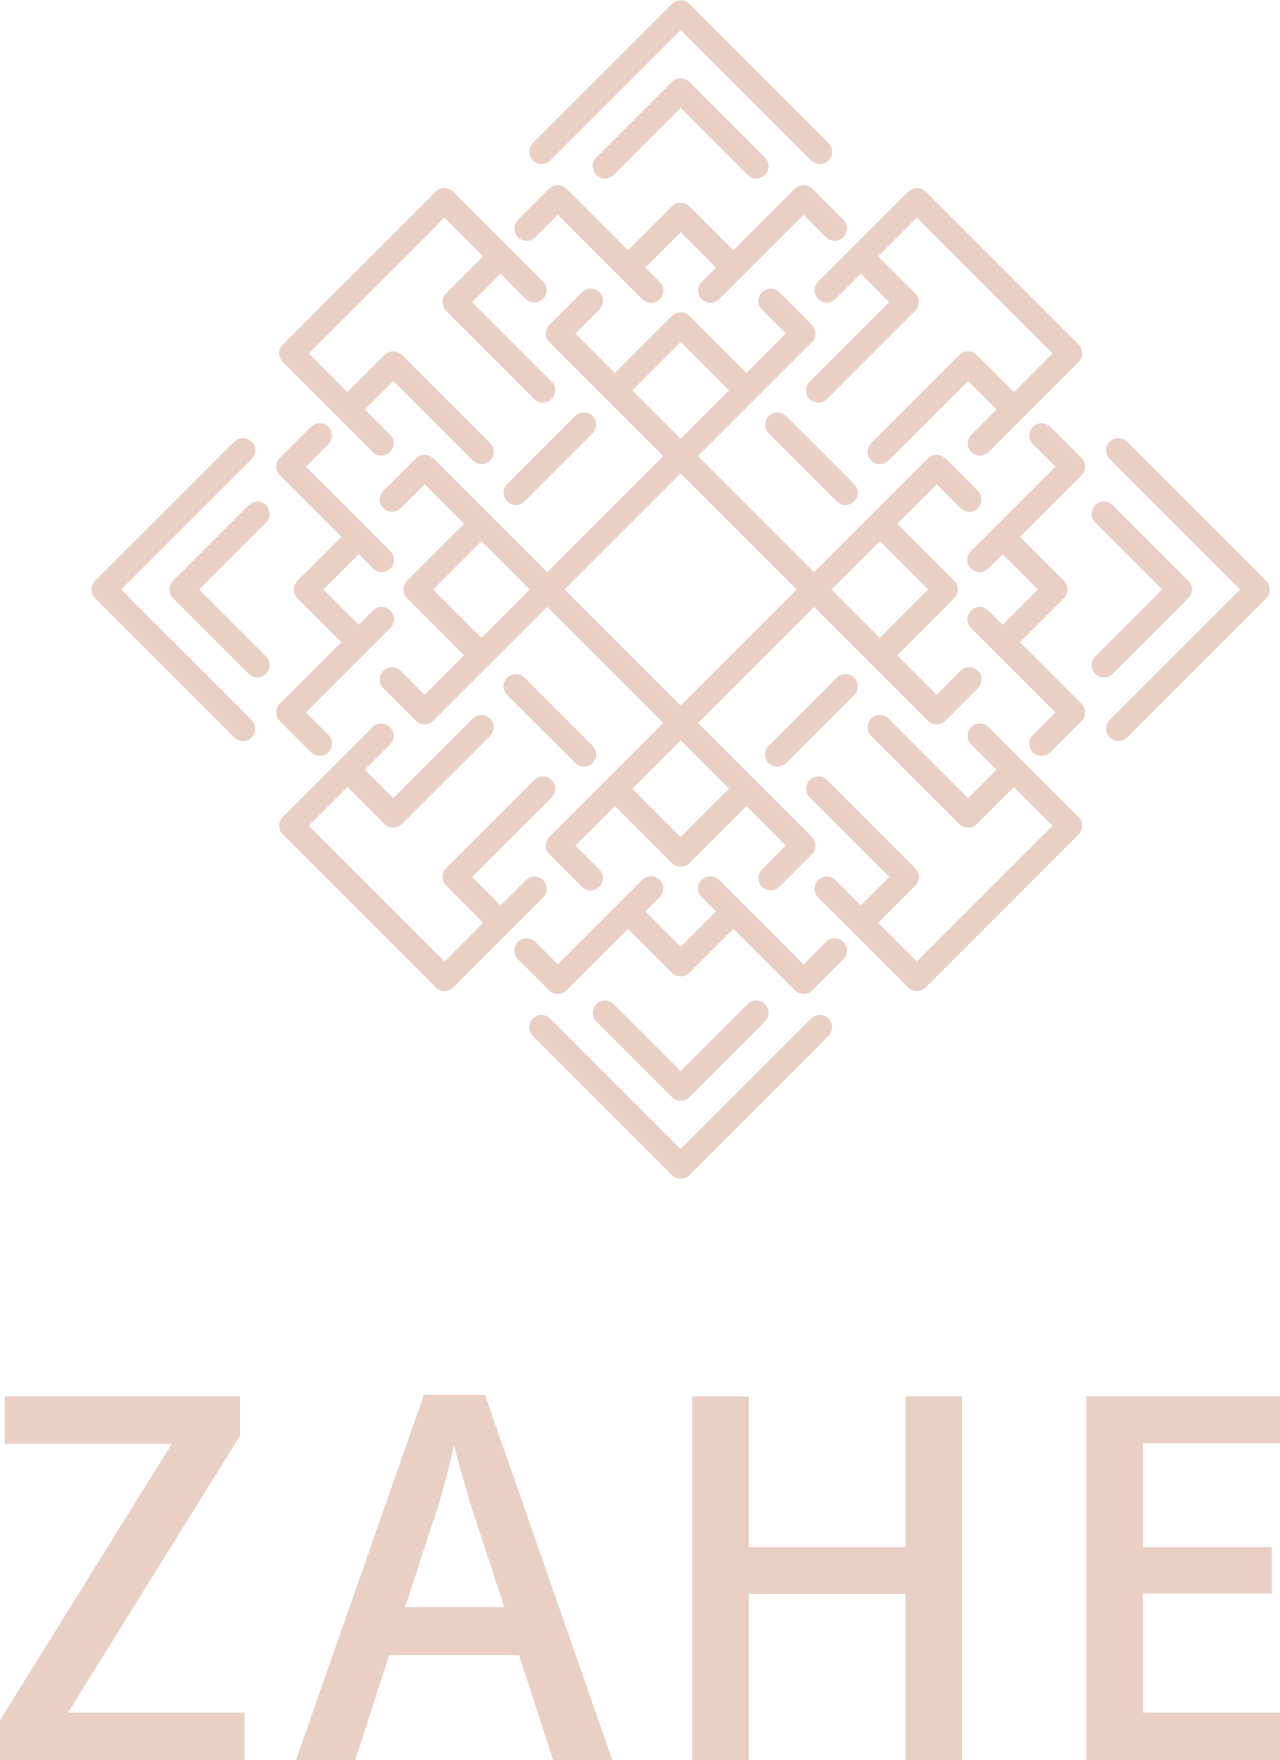 Zahe's web page